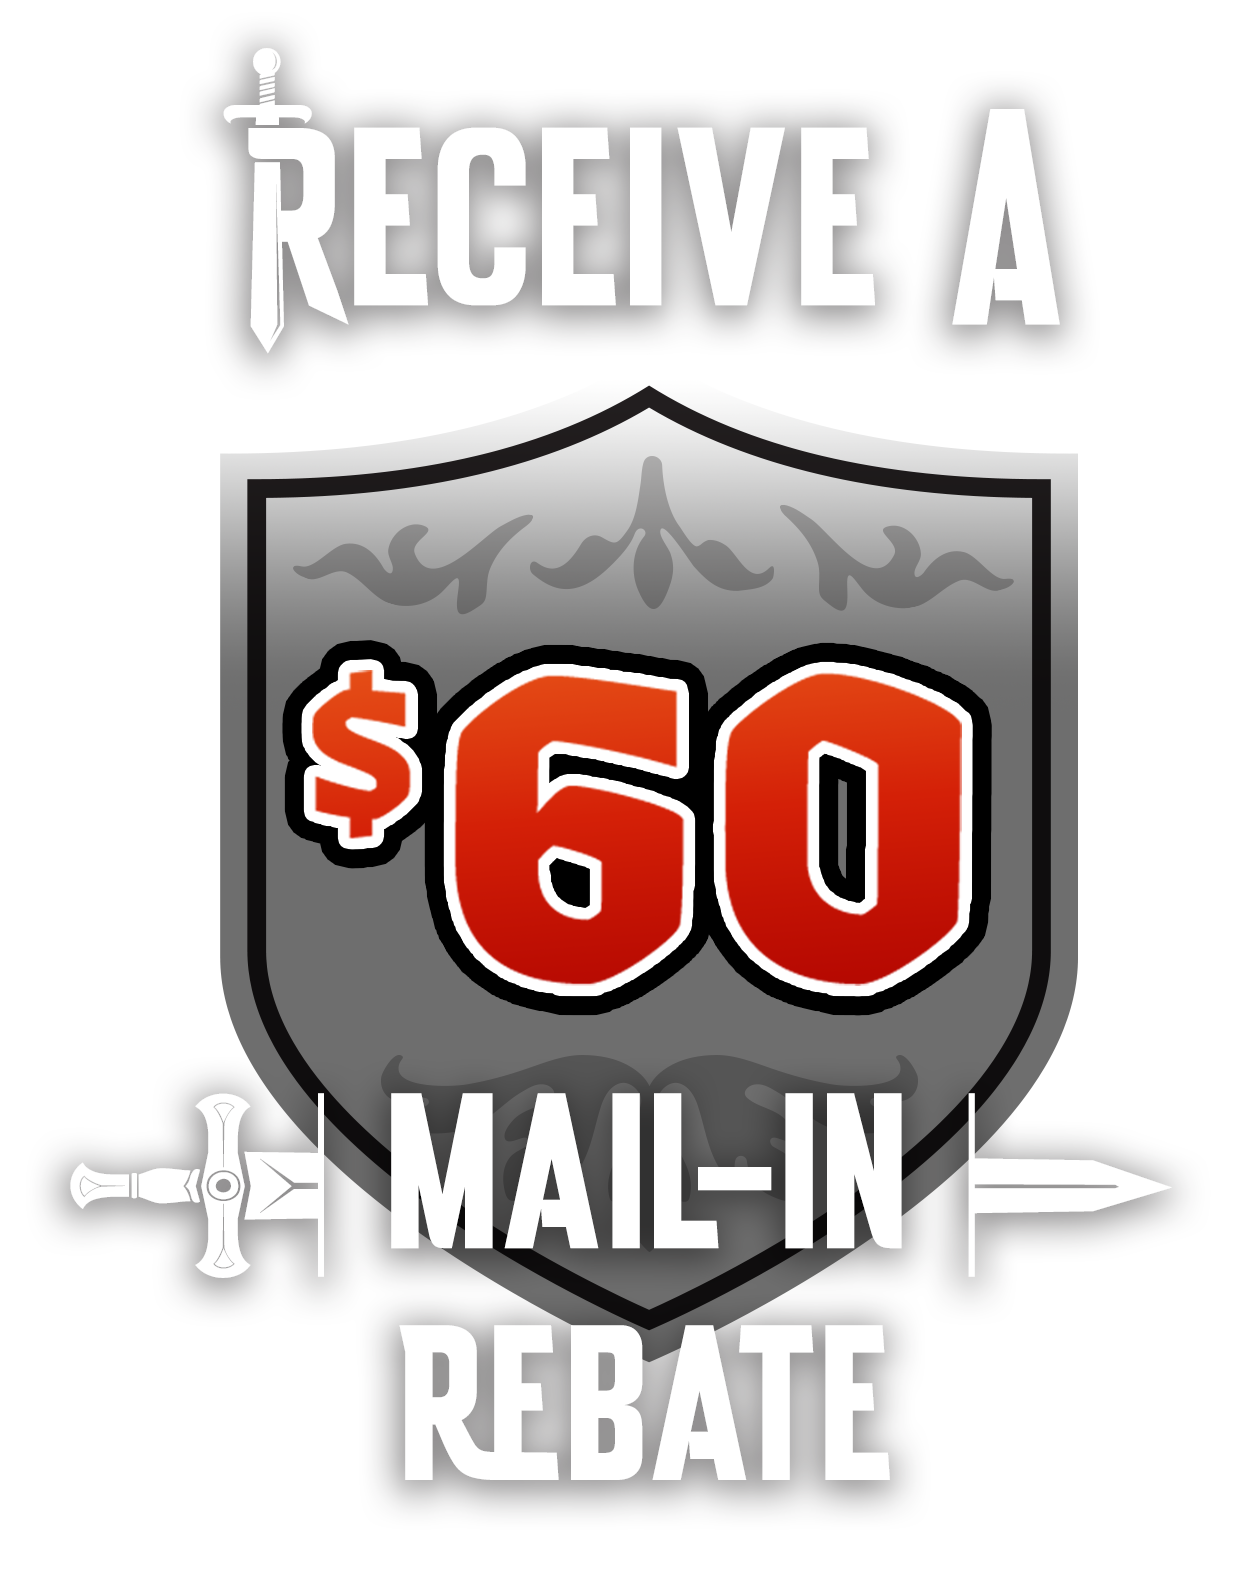 Receive a $60 Mail-in Rebate